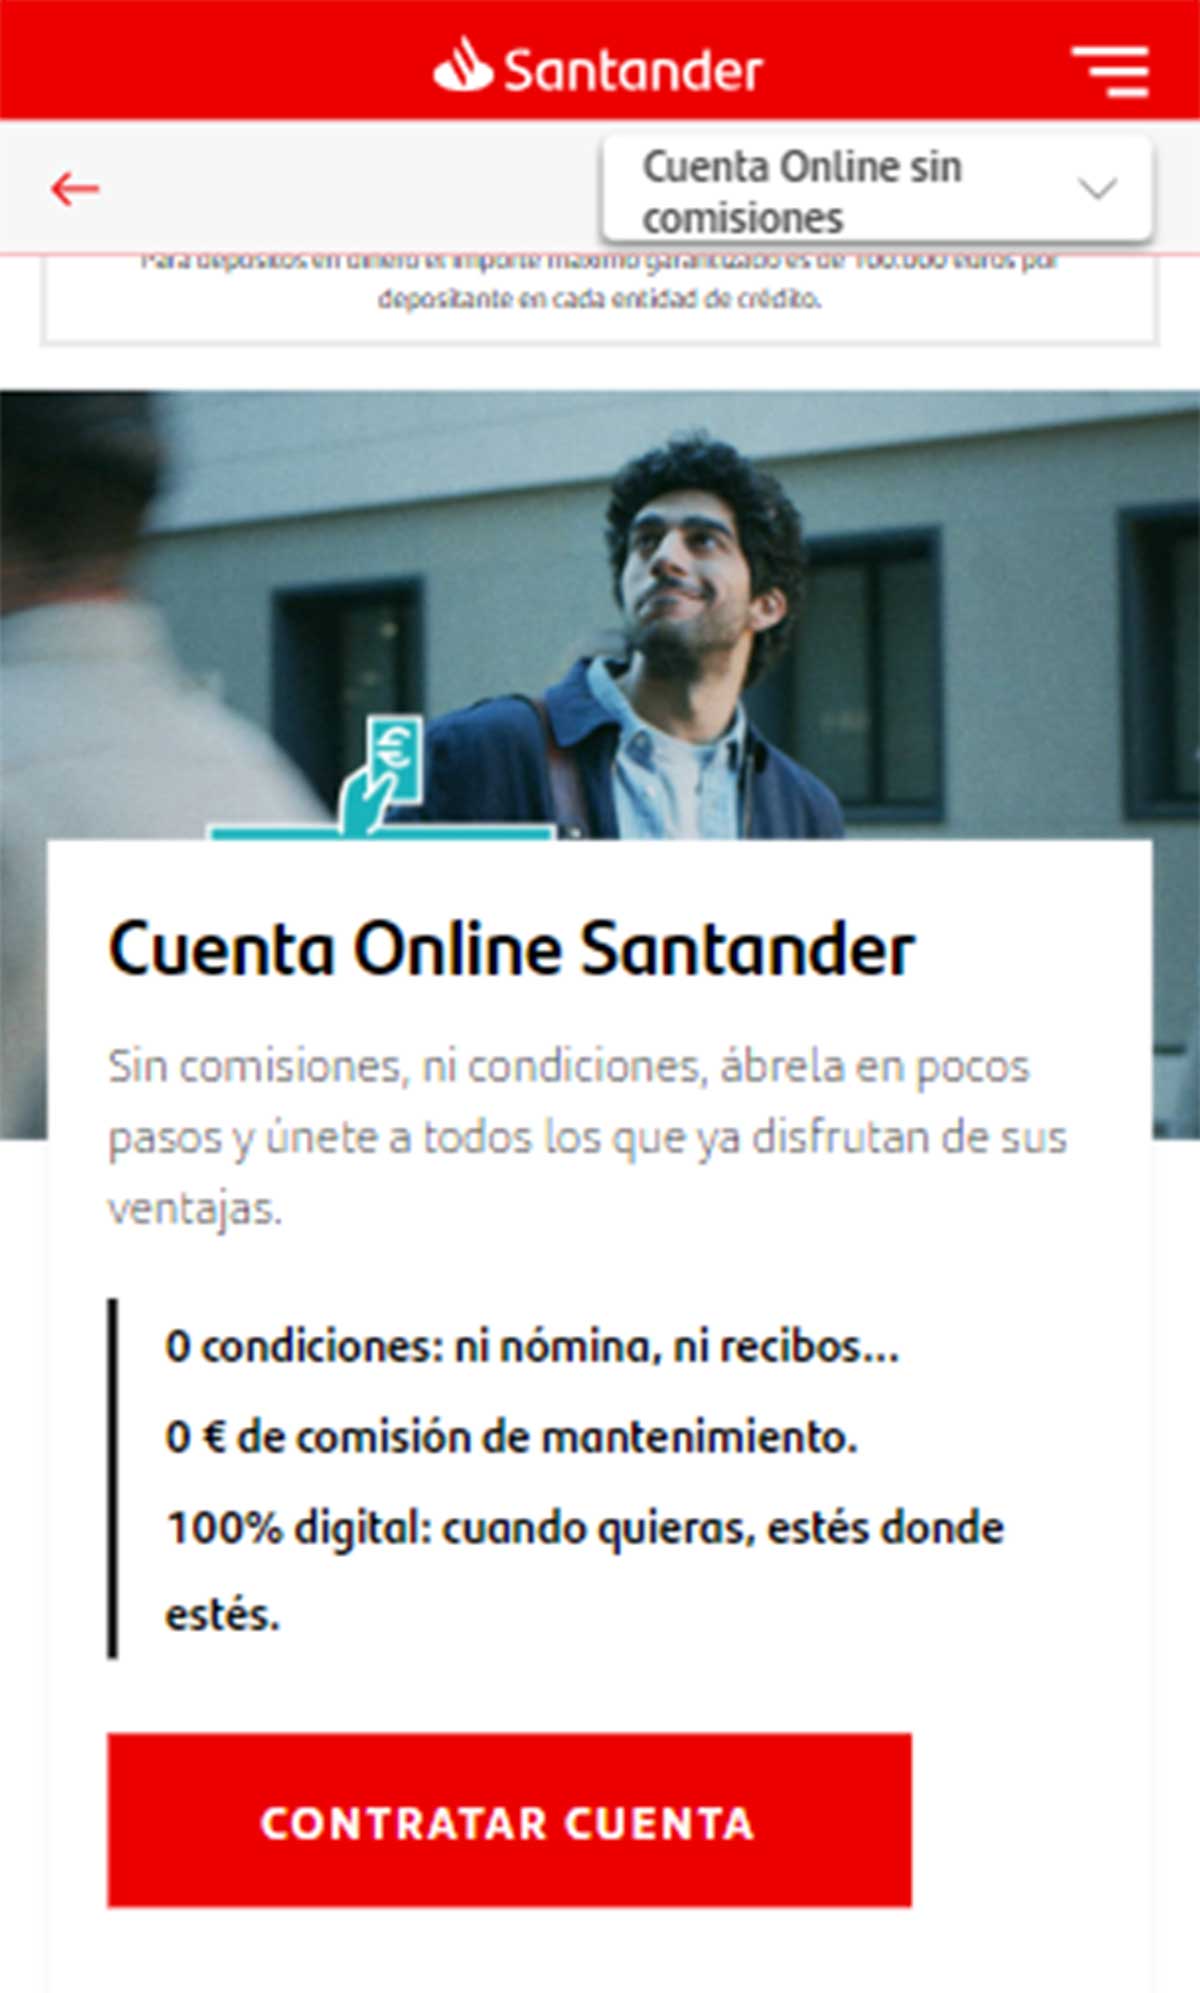 Contratar cuenta en Santander